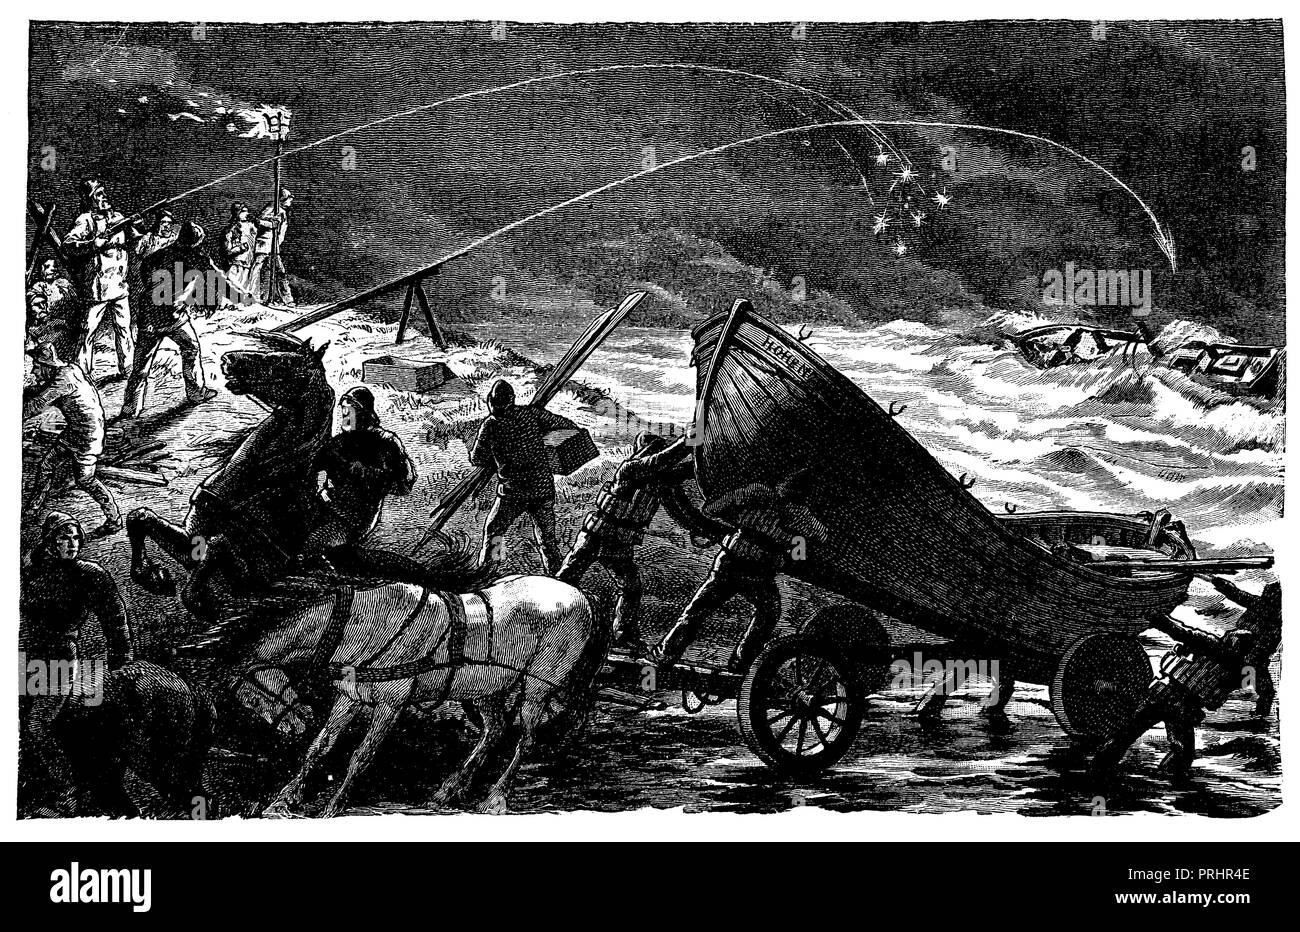 Lifeboat in action. From S. Wörishöffers 'Das Buch vom braven Mann',   1887 Stock Photo